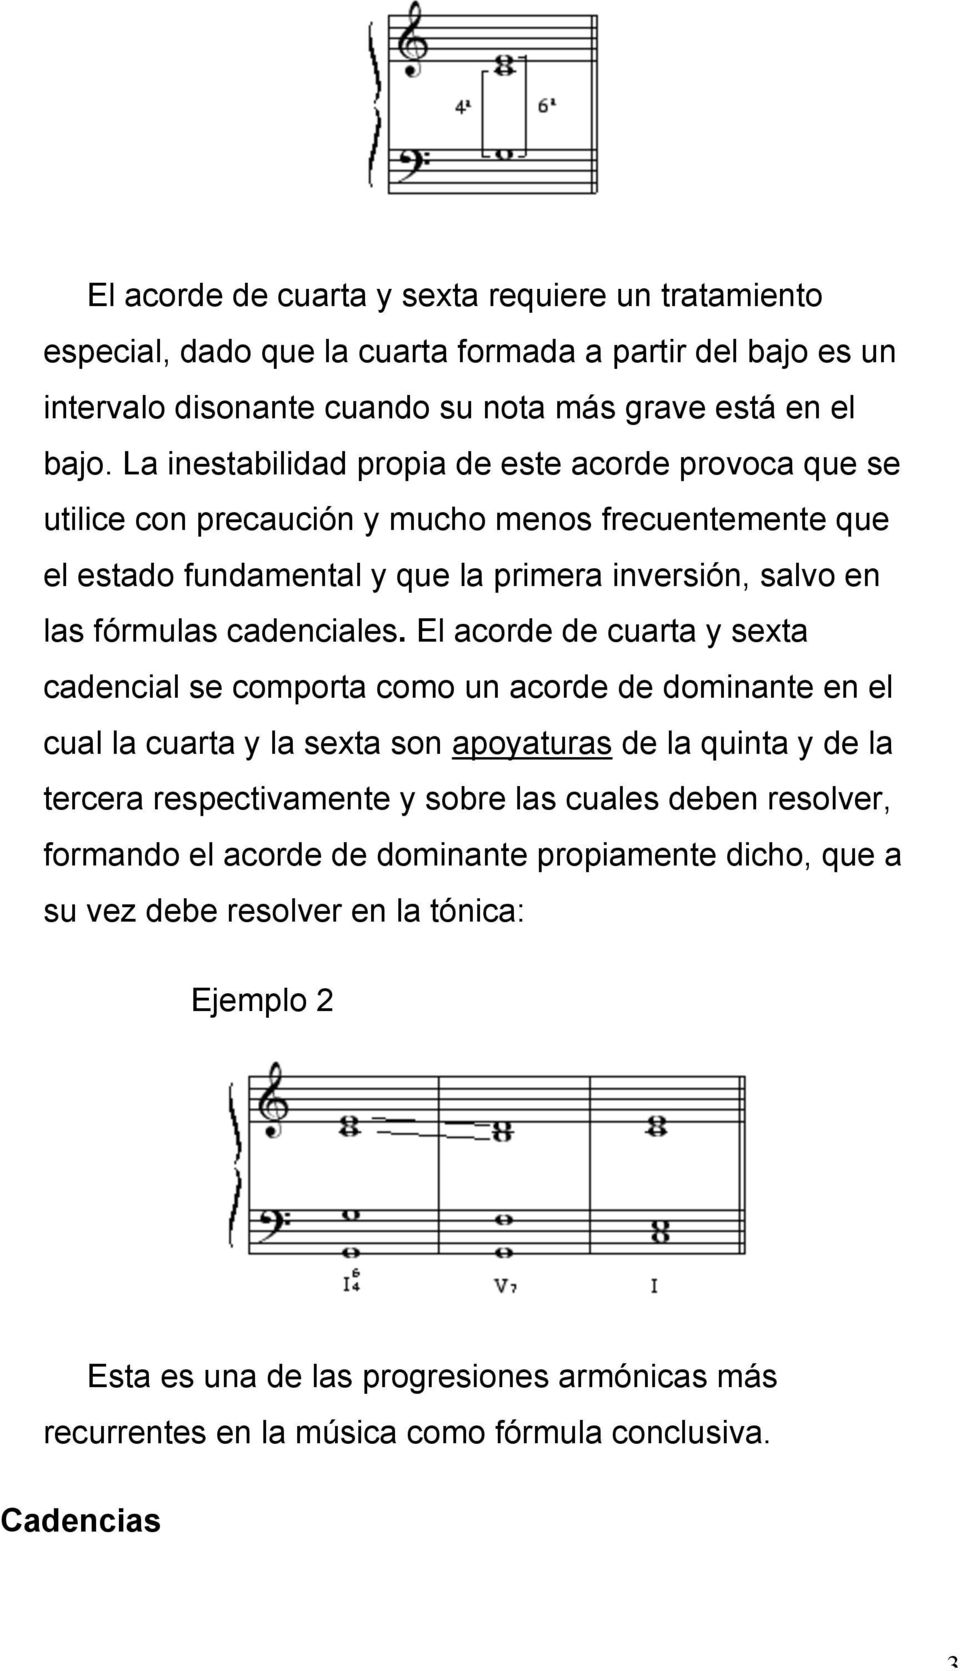 El acorde de cuarta y sexta cadencial se comporta como un acorde de dominante en el cual la cuarta y la sexta son apoyaturas de la quinta y de la tercera respectivamente y sobre las cuales deben